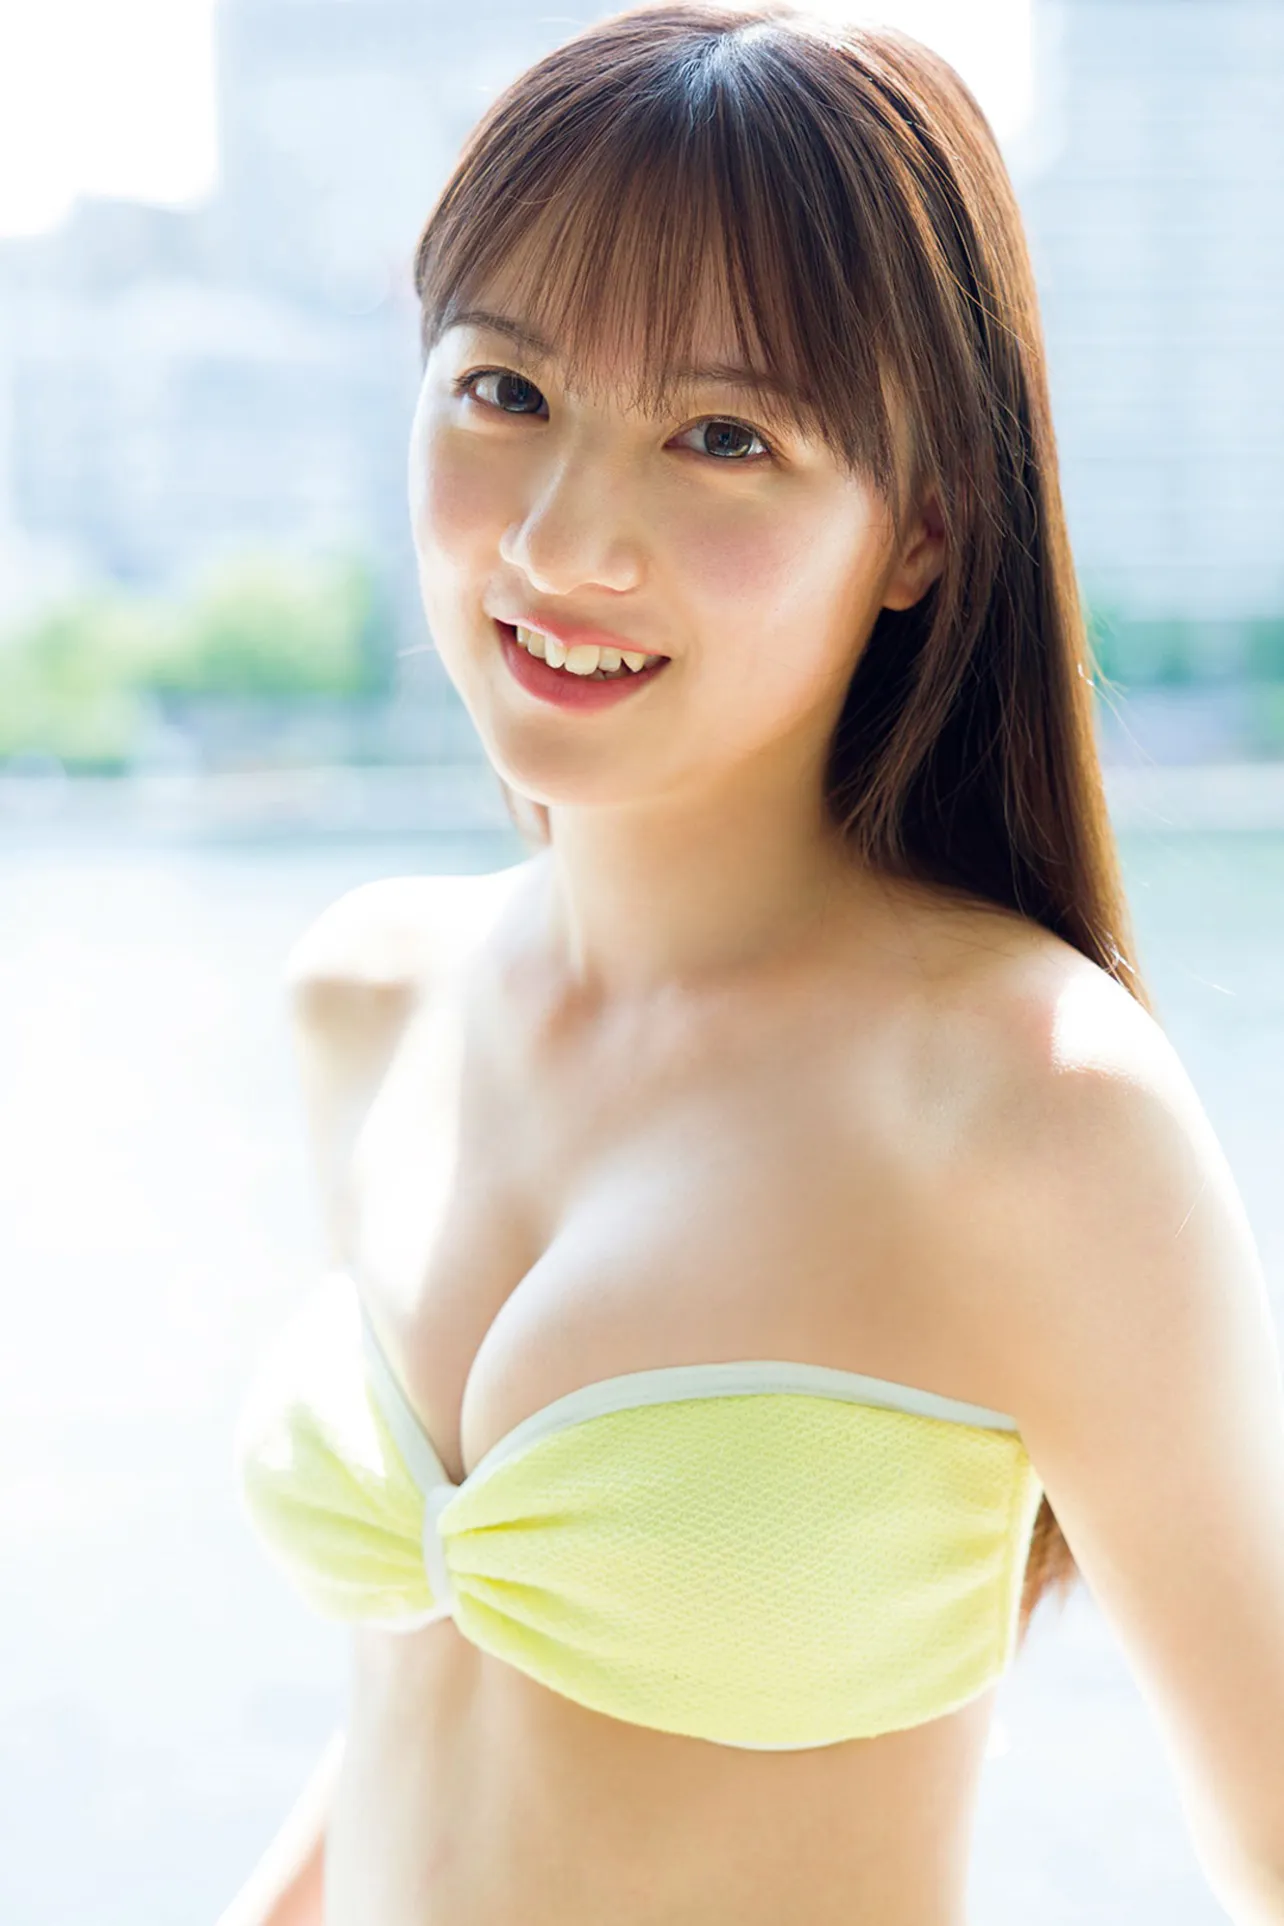 フレッシュな笑顔と溢れそうな美谷間を見せるフジコーズ・友恵温香